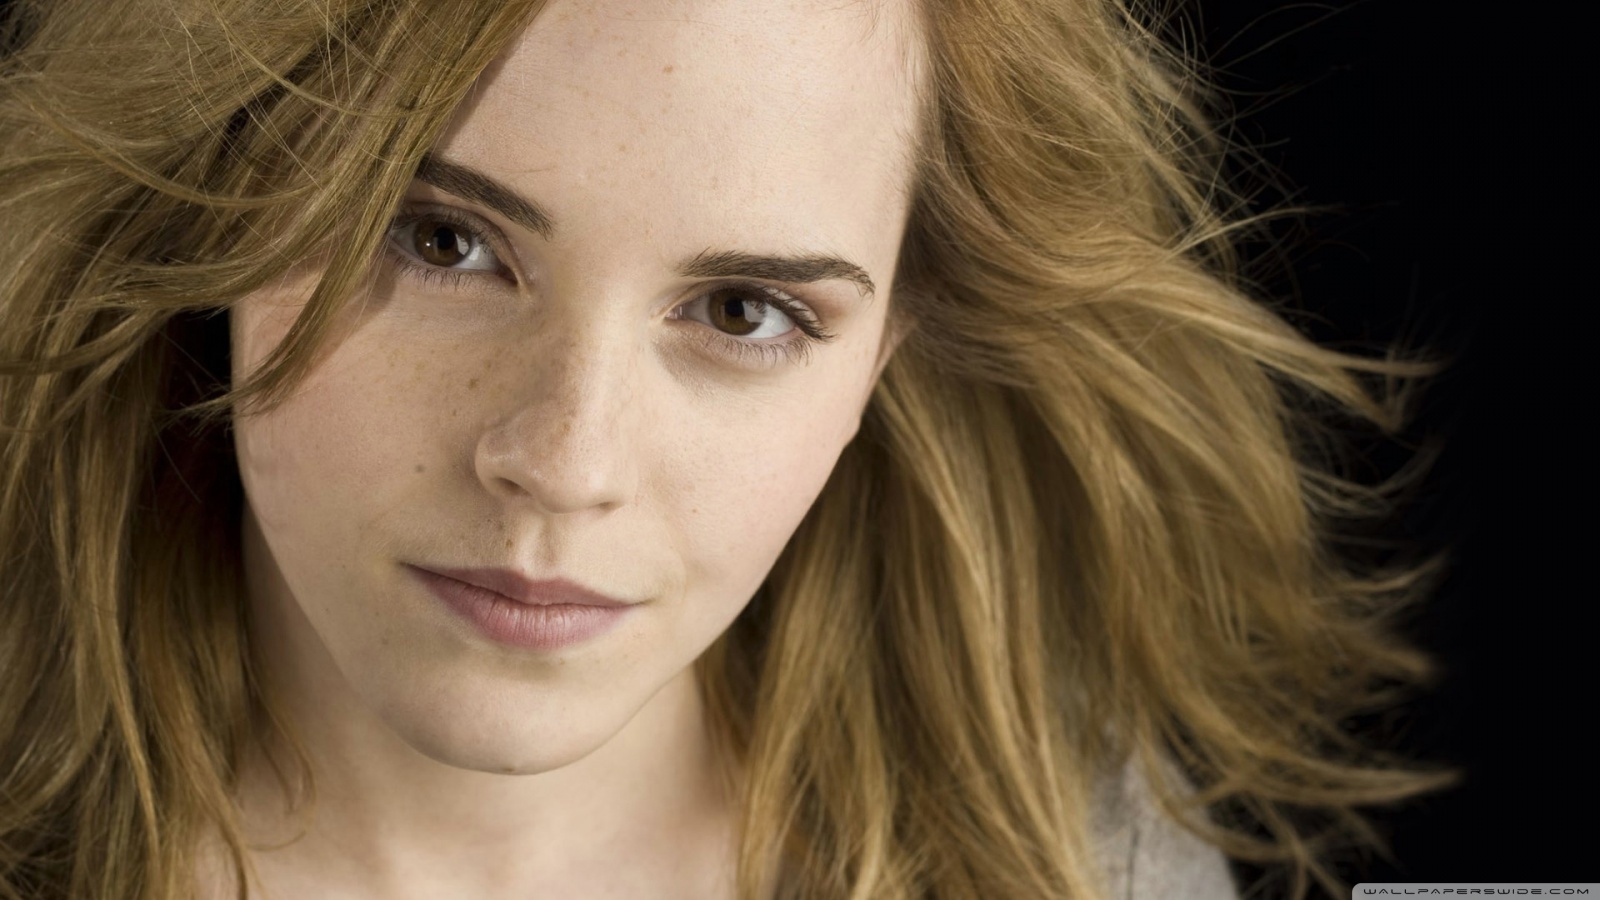 Fond d'ecran Emma Watson femme